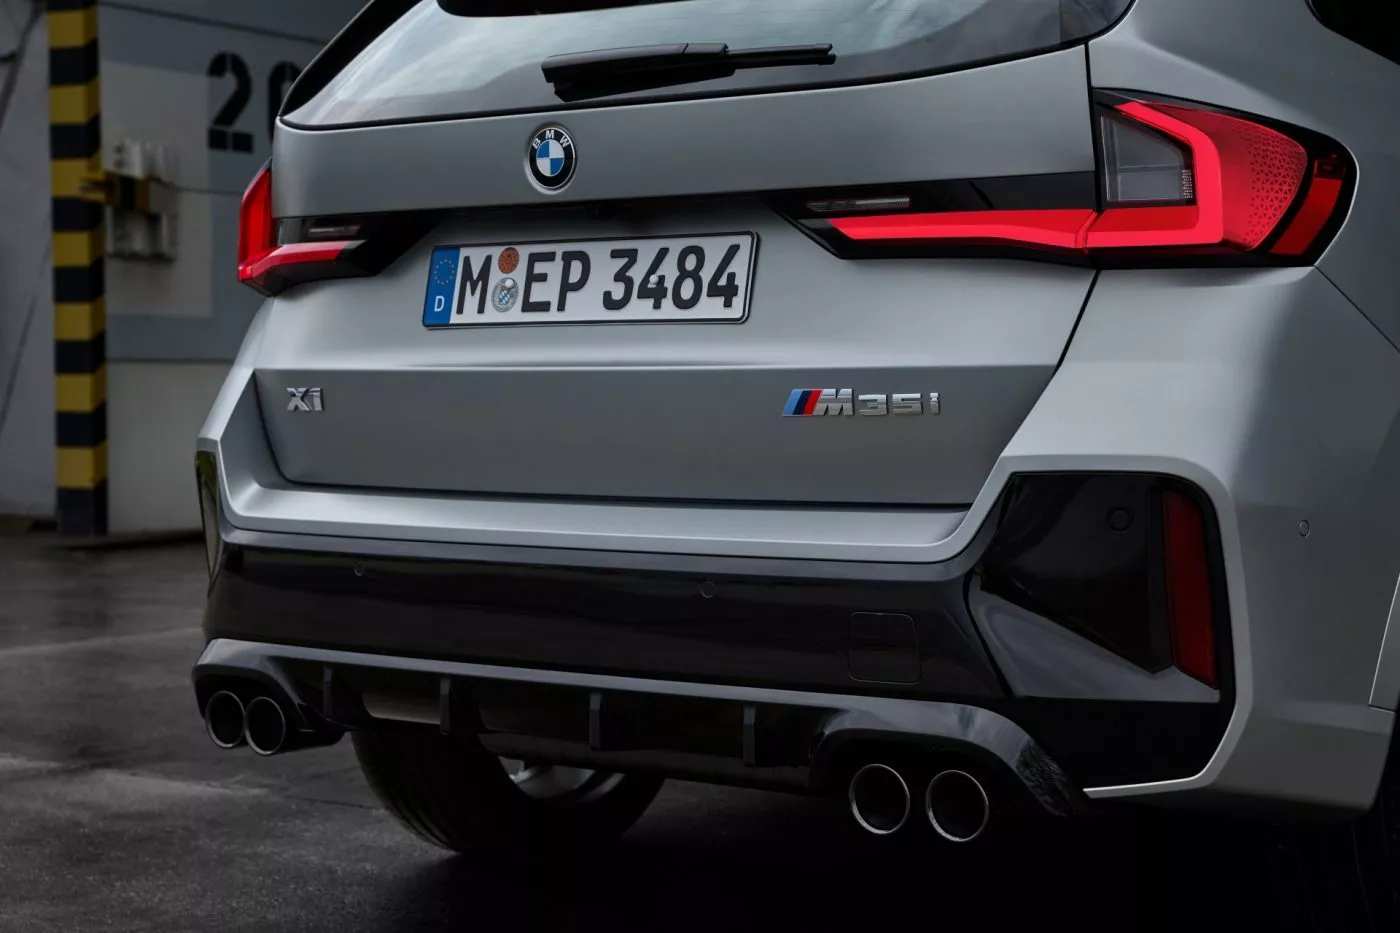 Con un 0-100 km/h en 5,4 s y quizá el mejor chasis de su clase, llega el BMW X1 más deportivo (no el más potente)